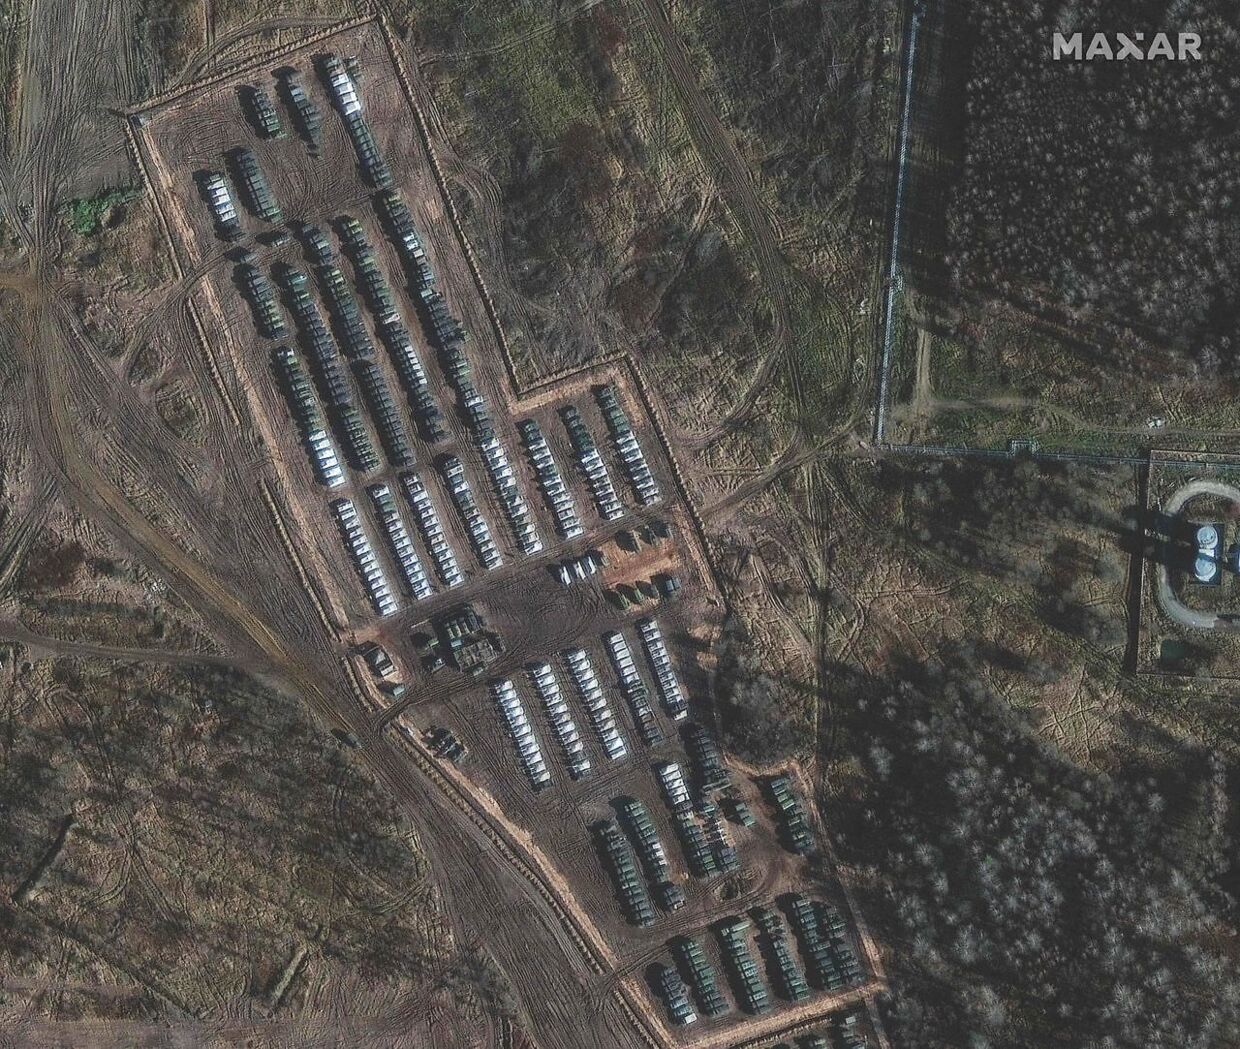 Satellitbillede viser russiske tropper i hobetal tæt ved den ukraiske grænse. Flere EU-ledere er bekymrede for, om krisen kan udvikle sig yderligere.